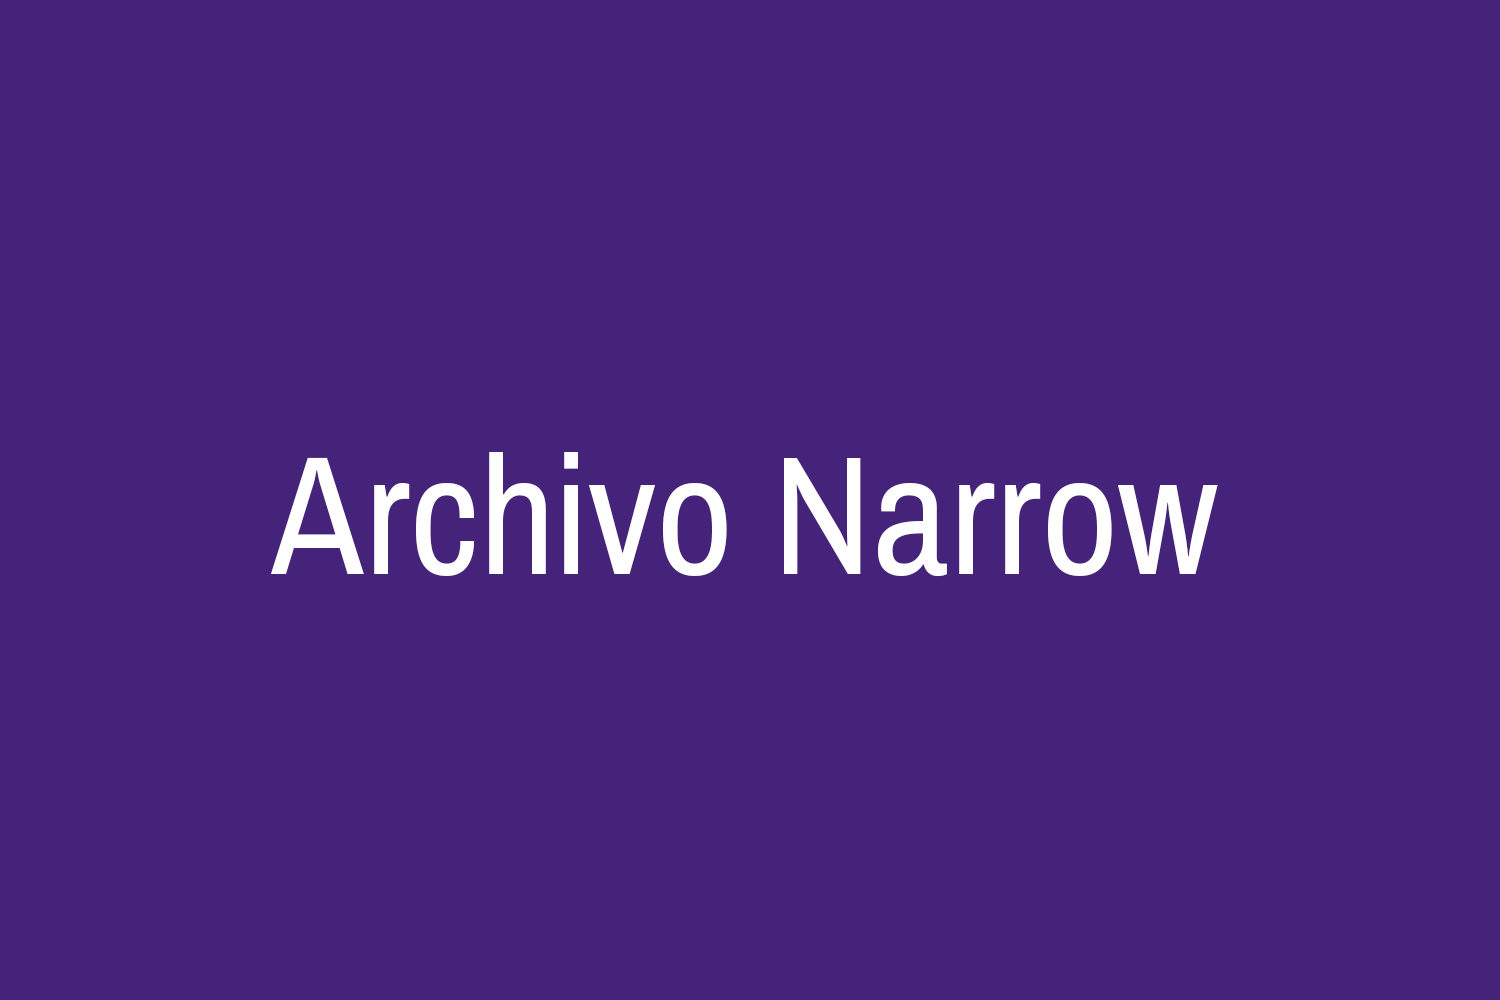 Archivo Narrow